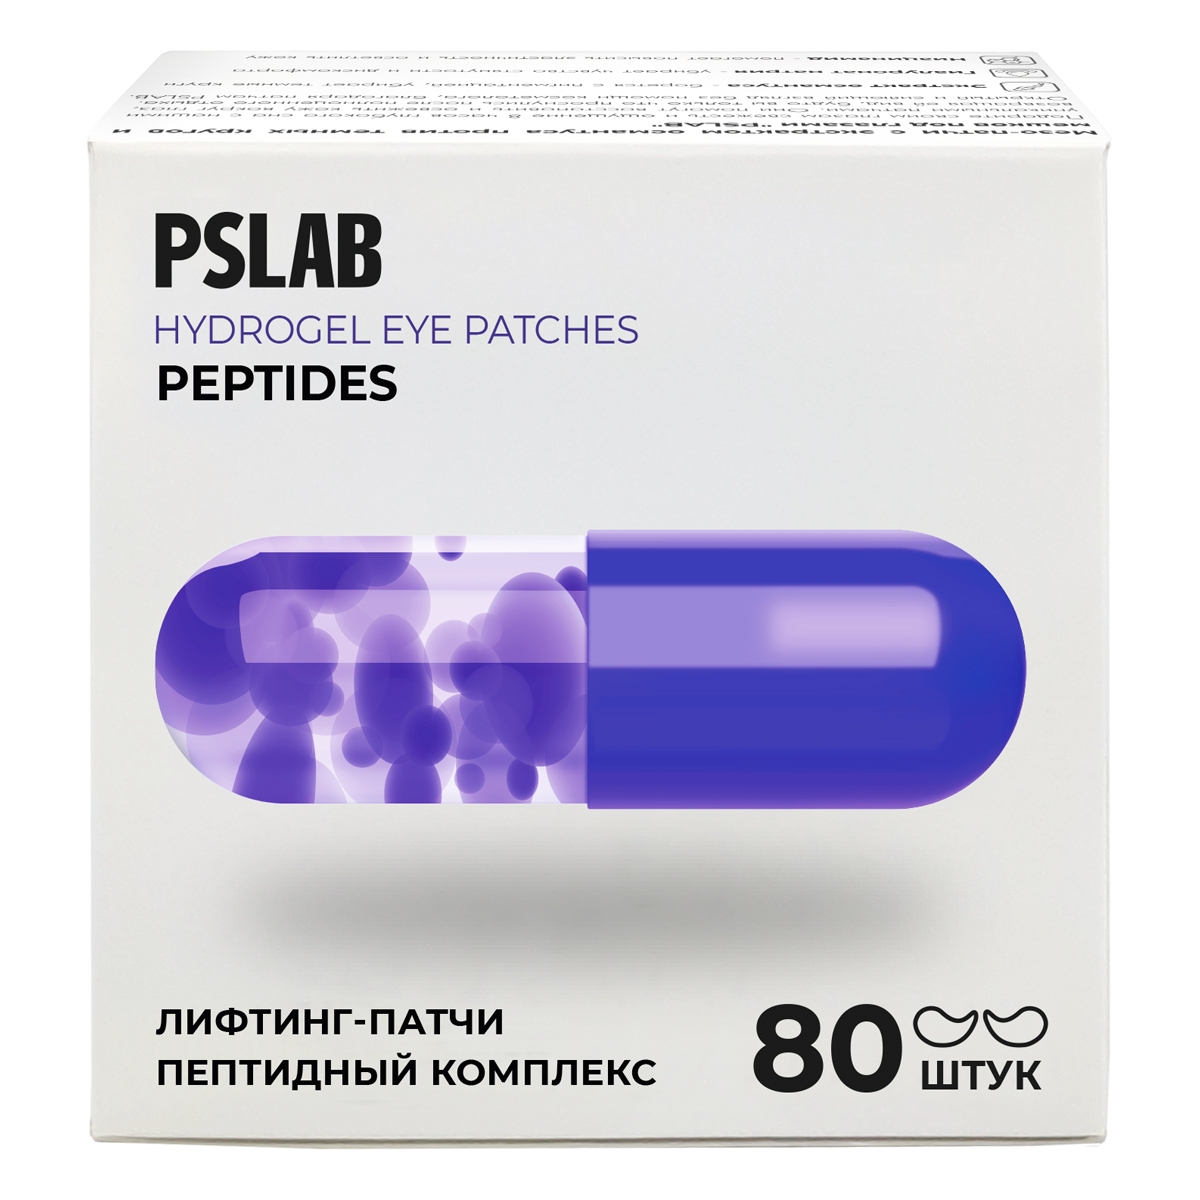 Лифтинг-патчи PSLAB с пептидами против возрастных изменений 358гр патчи глэм с салициловой кислотой и маслом чайного дерева в уп 12шт 11г